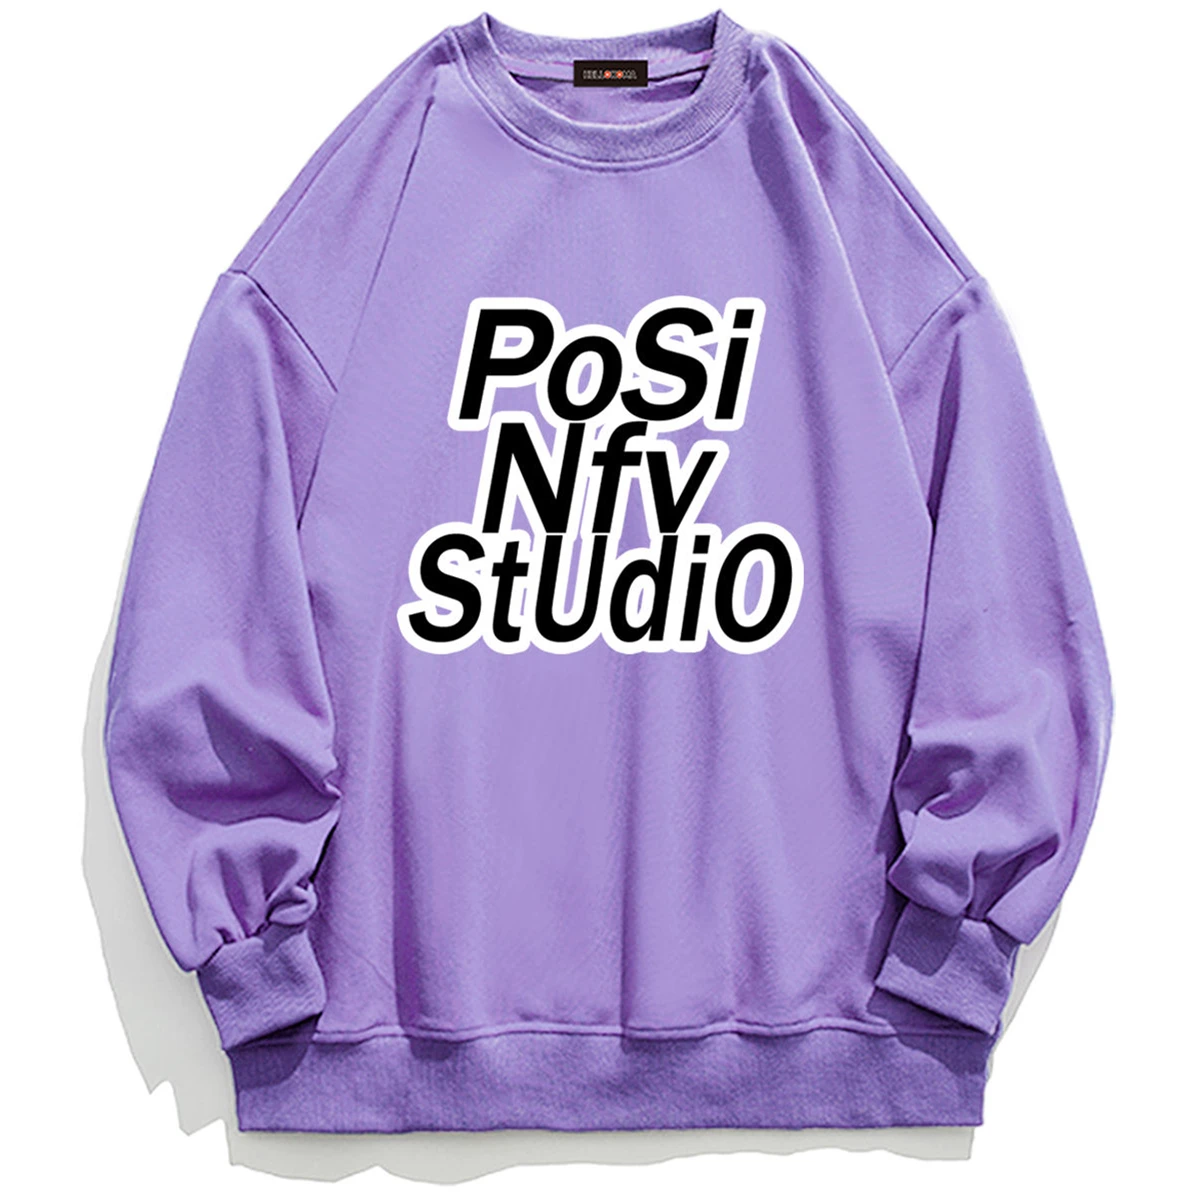 

Женский пуловер с буквенным принтом, простой свитшот цвета хаки и фиолетового цвета в стиле панк/хип-хоп, парные пуловеры большого размера, ...